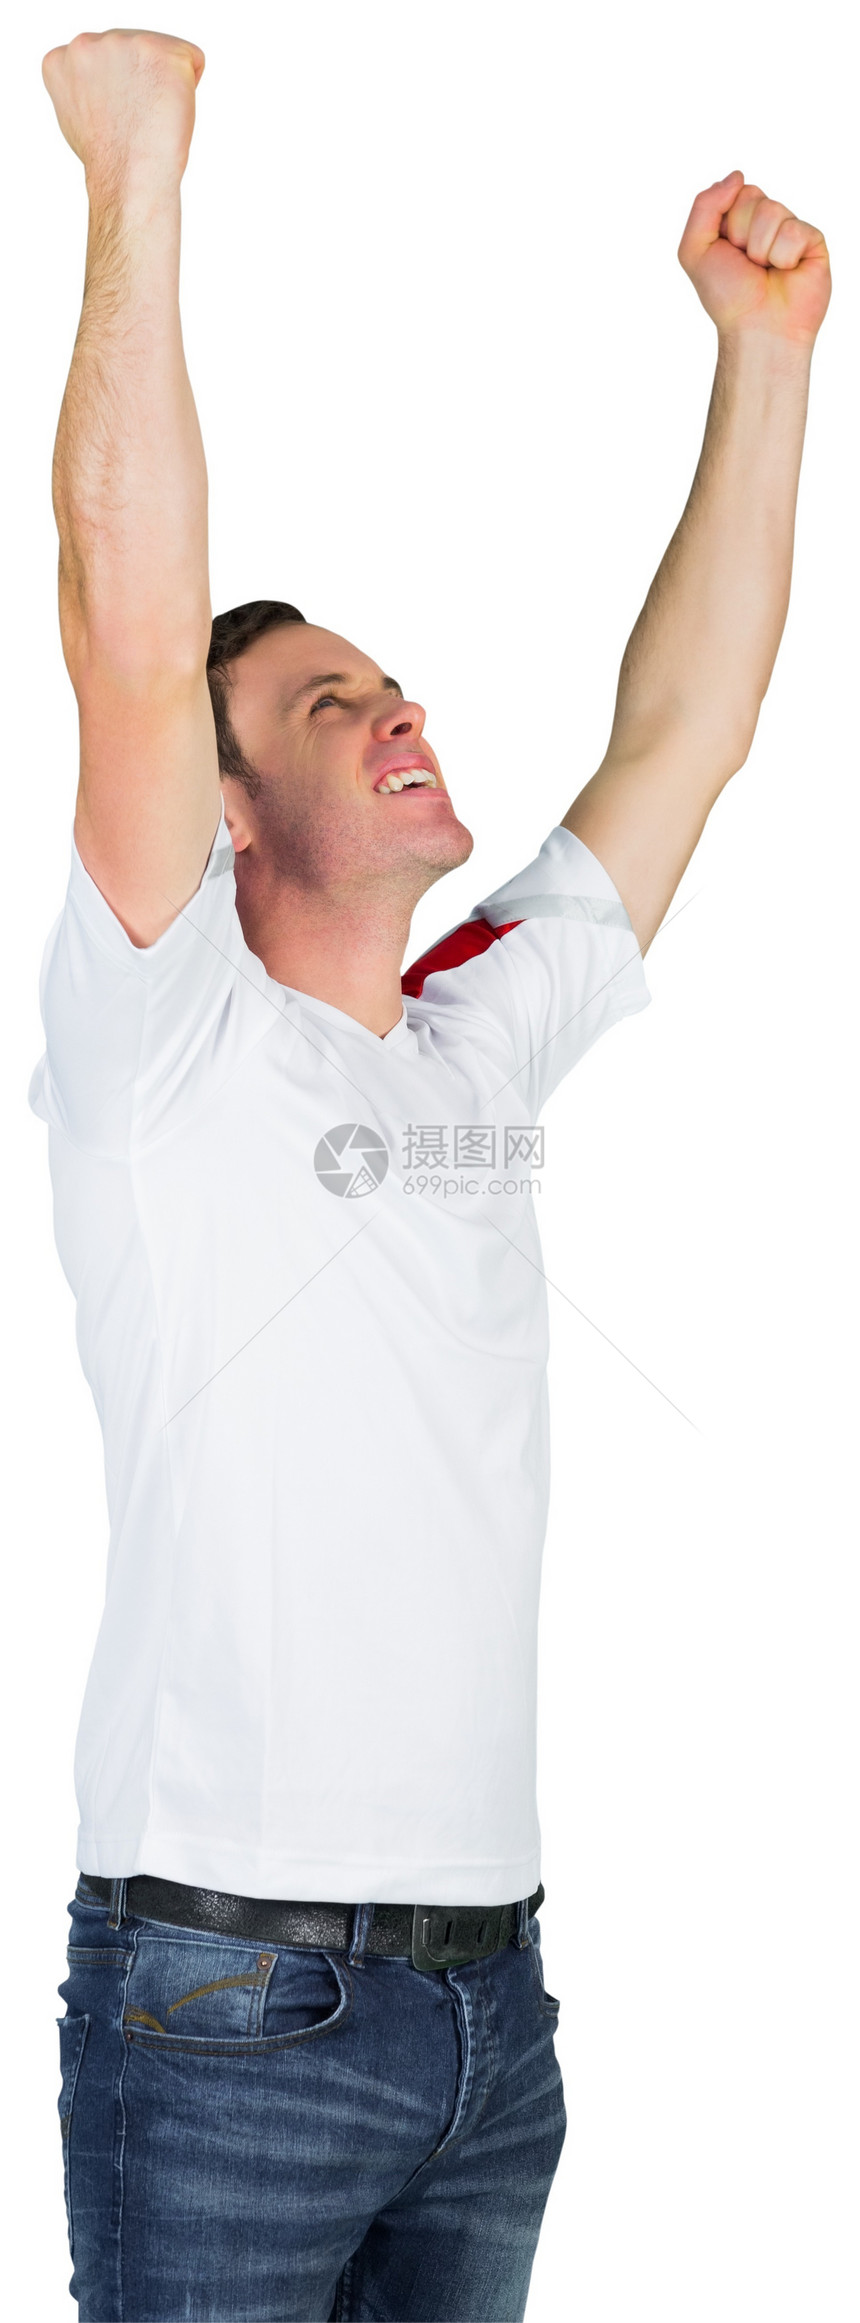 白装足球球迷喜悦白色影棚运动胜利世界球衣男性杯子扇子图片